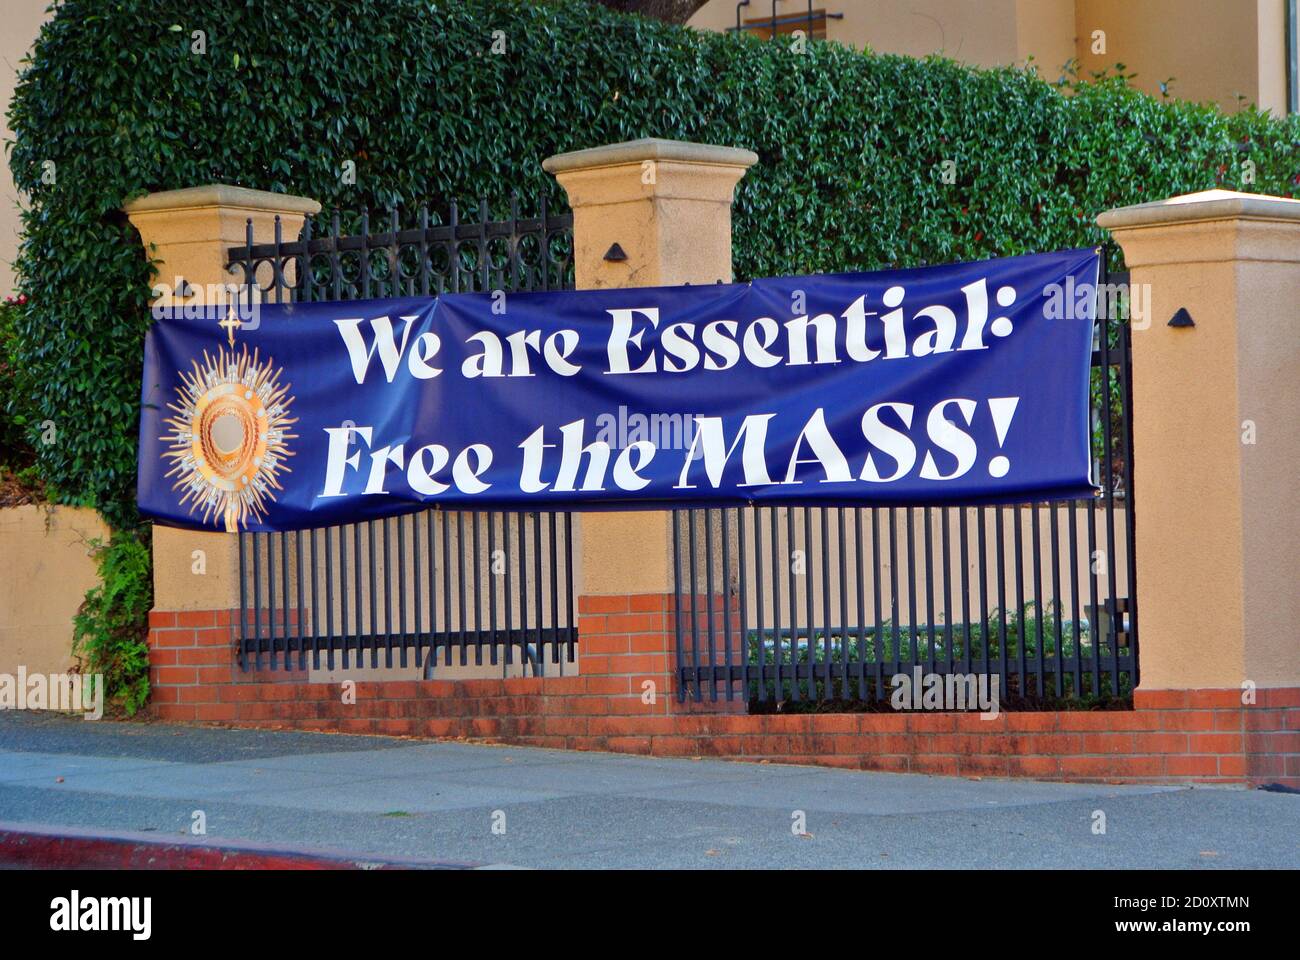 siamo un segno essenziale nella chiesa cattolica locale di larkspur california protesta rifiuto della contea di marin di consentire l'apertura della chiesa per massa Foto Stock